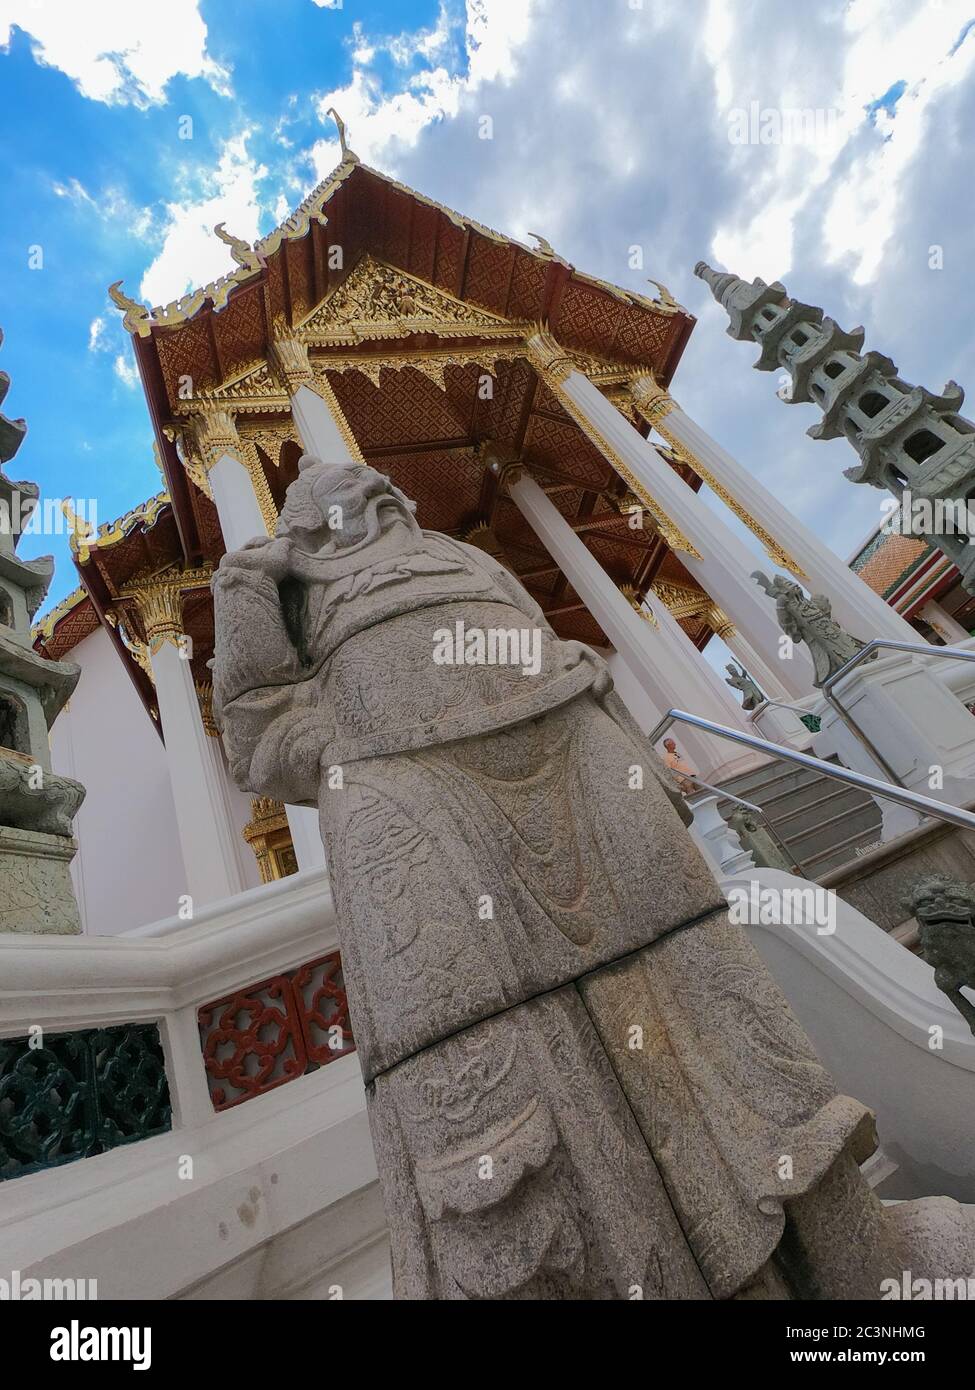 Hermosa escultura en la entrada del templo budista Wat Suthat Thepwararam en Bangkok, Tailandia Foto de stock